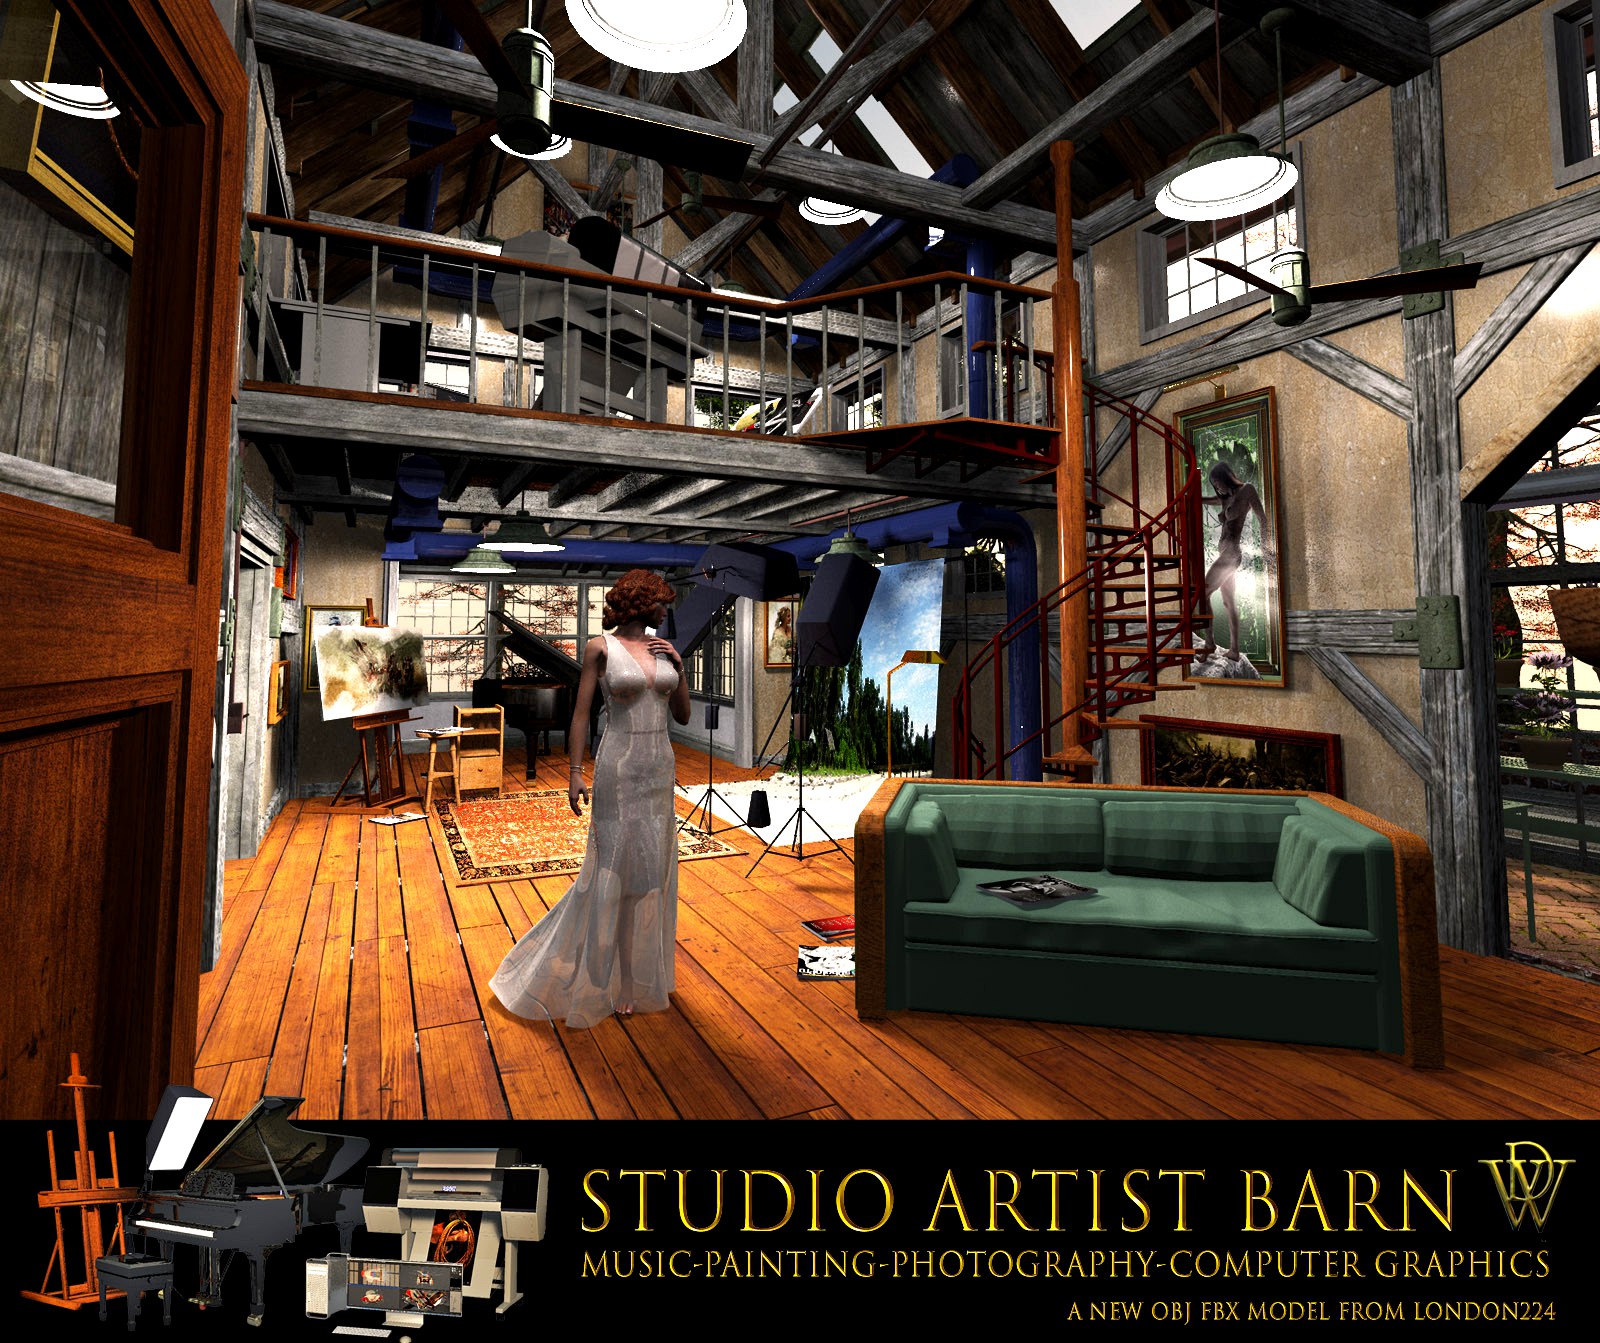 MS18 Studio Artist Barn for Obj fbx - Extended License